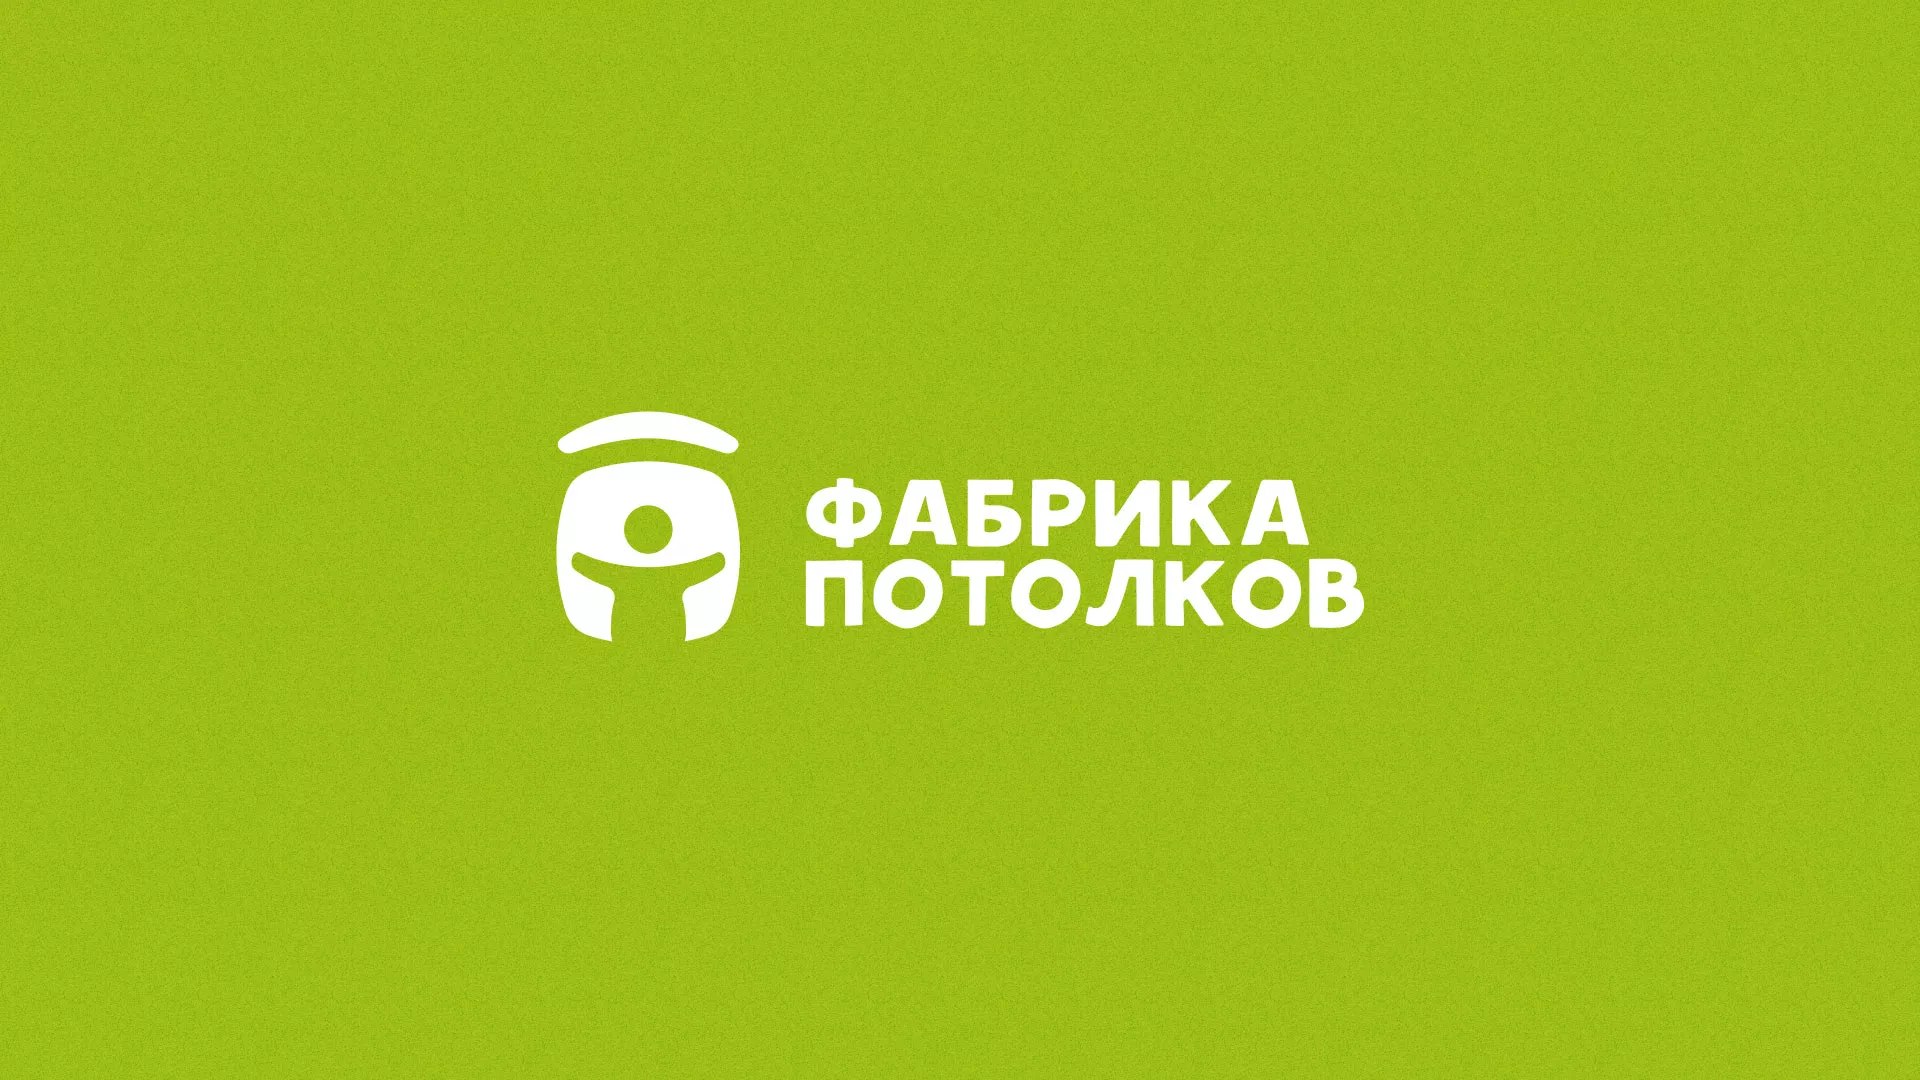 Разработка логотипа для производства натяжных потолков в Шелехове